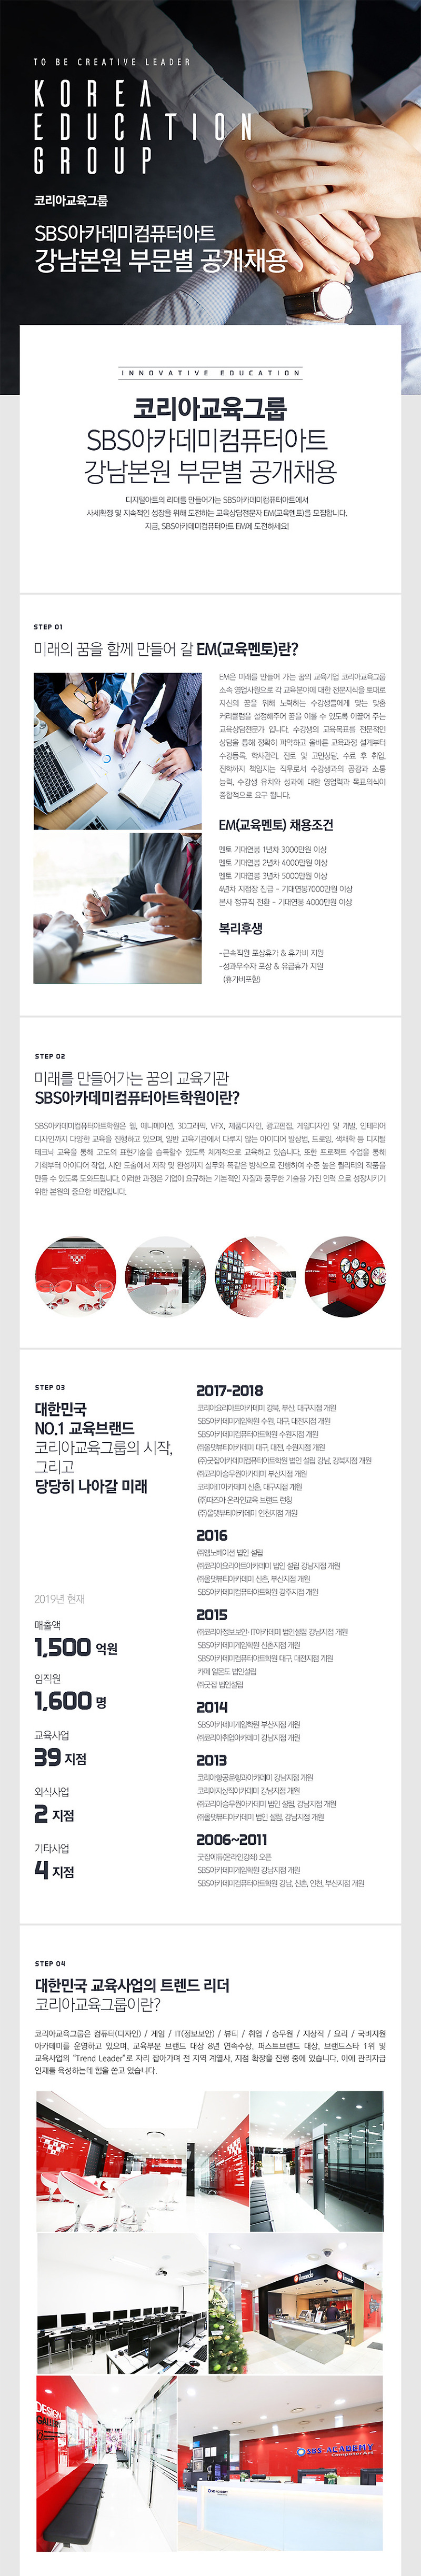 코리아교육그룹 SBS아카데미 강남 본원 부문별 공개채용